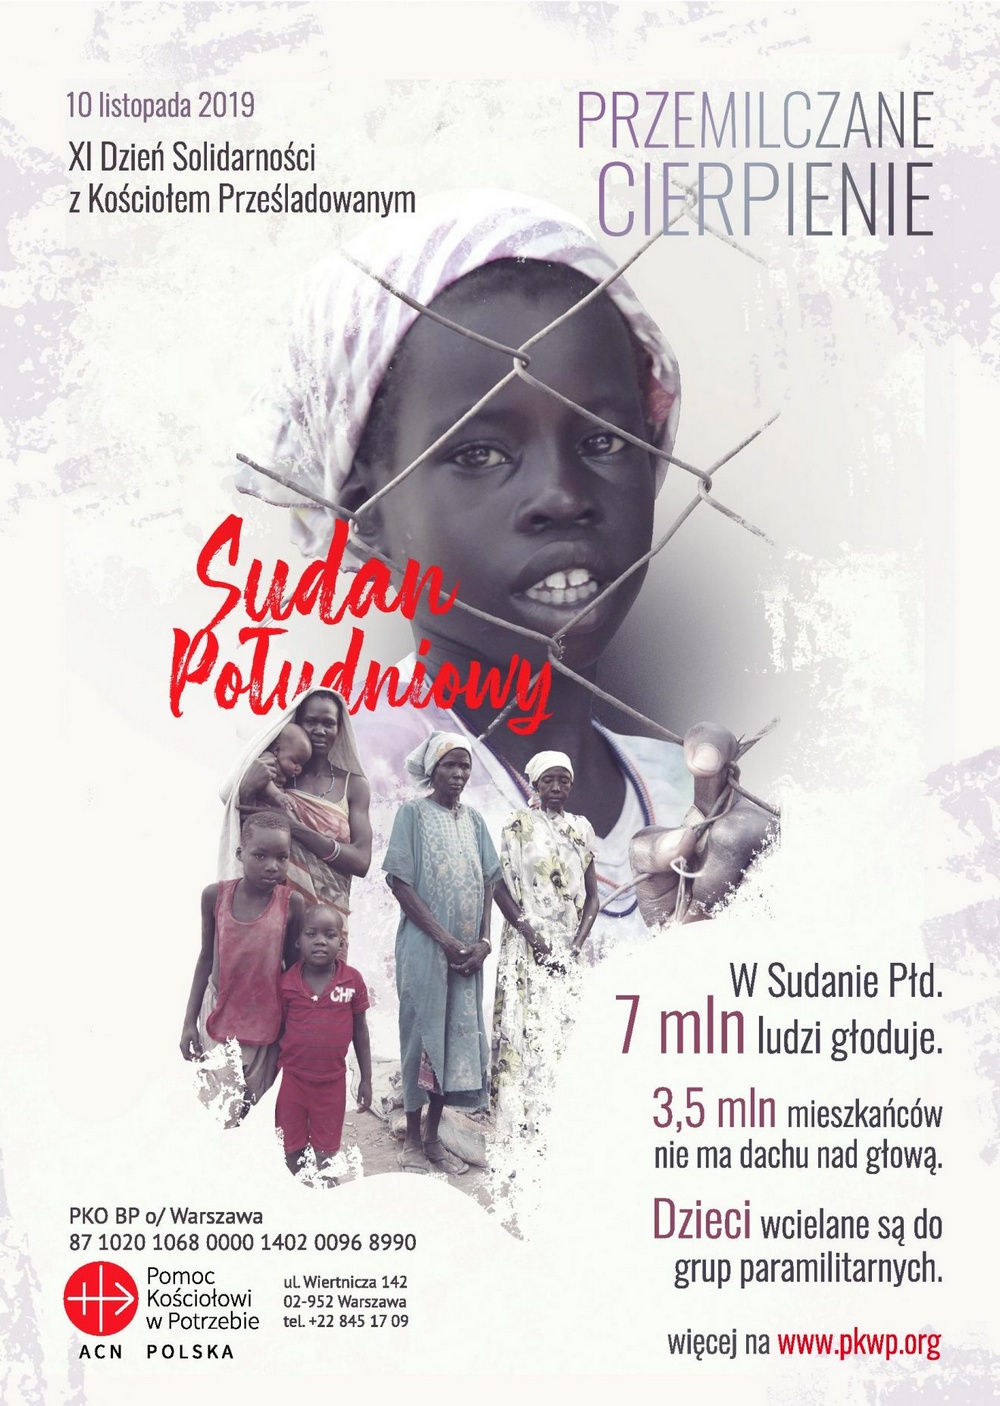 XI Dzień Solidarności z Kościołem Prześladowanym: "Sudan Południowy. Przemilczane cierpienie" - Niedziela, 10 listopada 2019